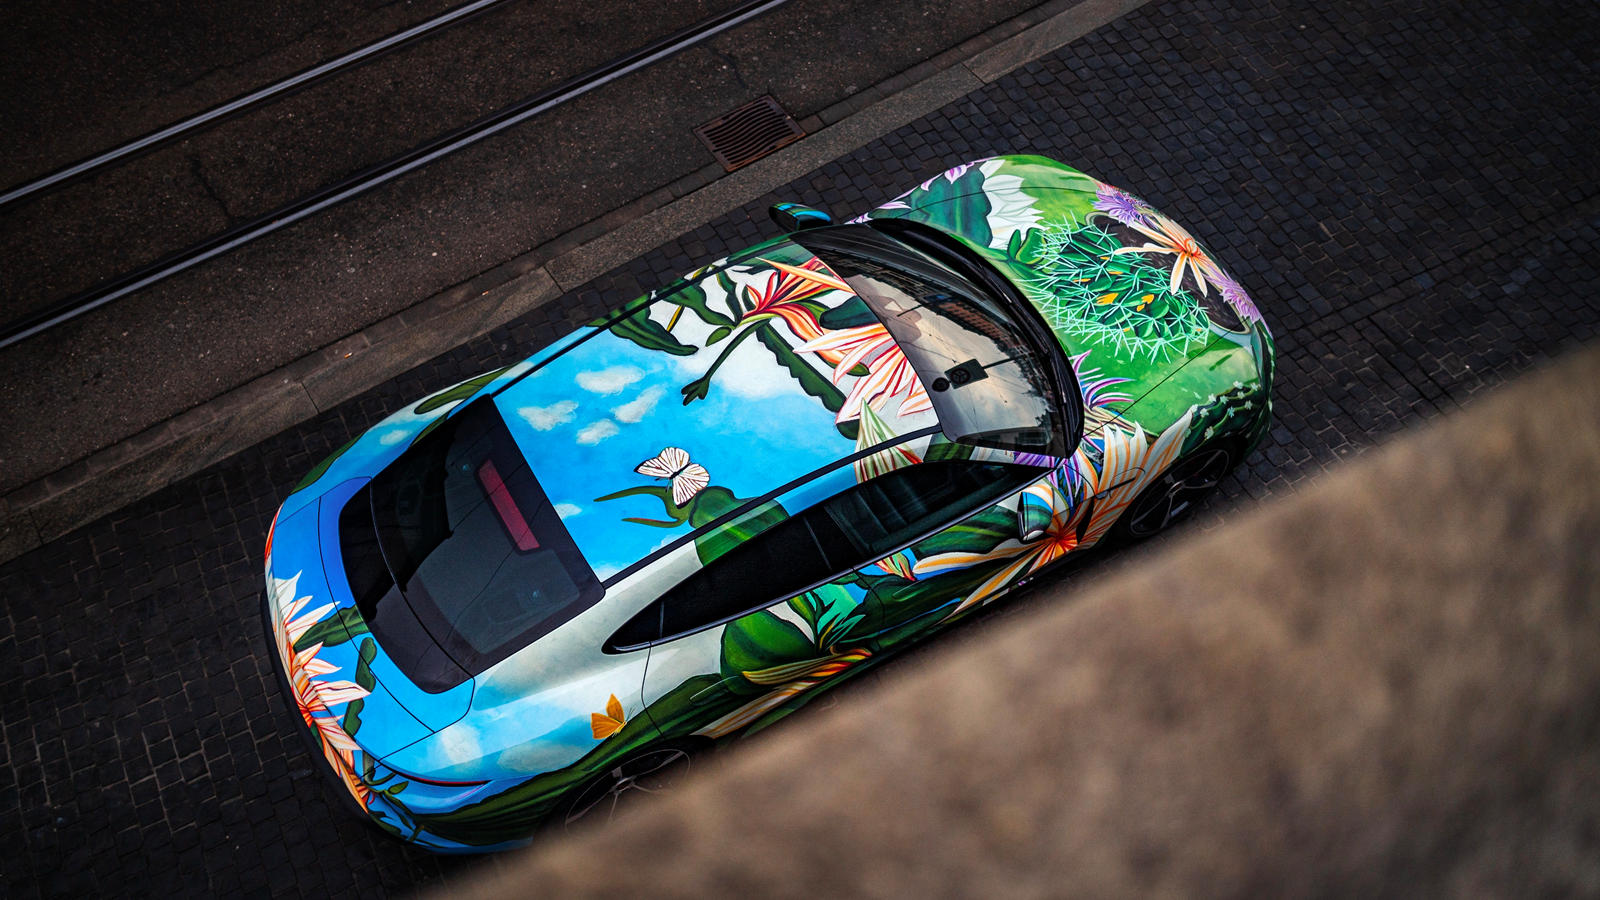 Если вы хотите завладеть этим автомобильным произведением искусства, уникальный арт-кар Porsche Taycan будет продаваться на благотворительном онлайн-аукционе RM Sothebys, который начнется 6 апреля и закончится 13 апреля. Все вырученные средства пойд